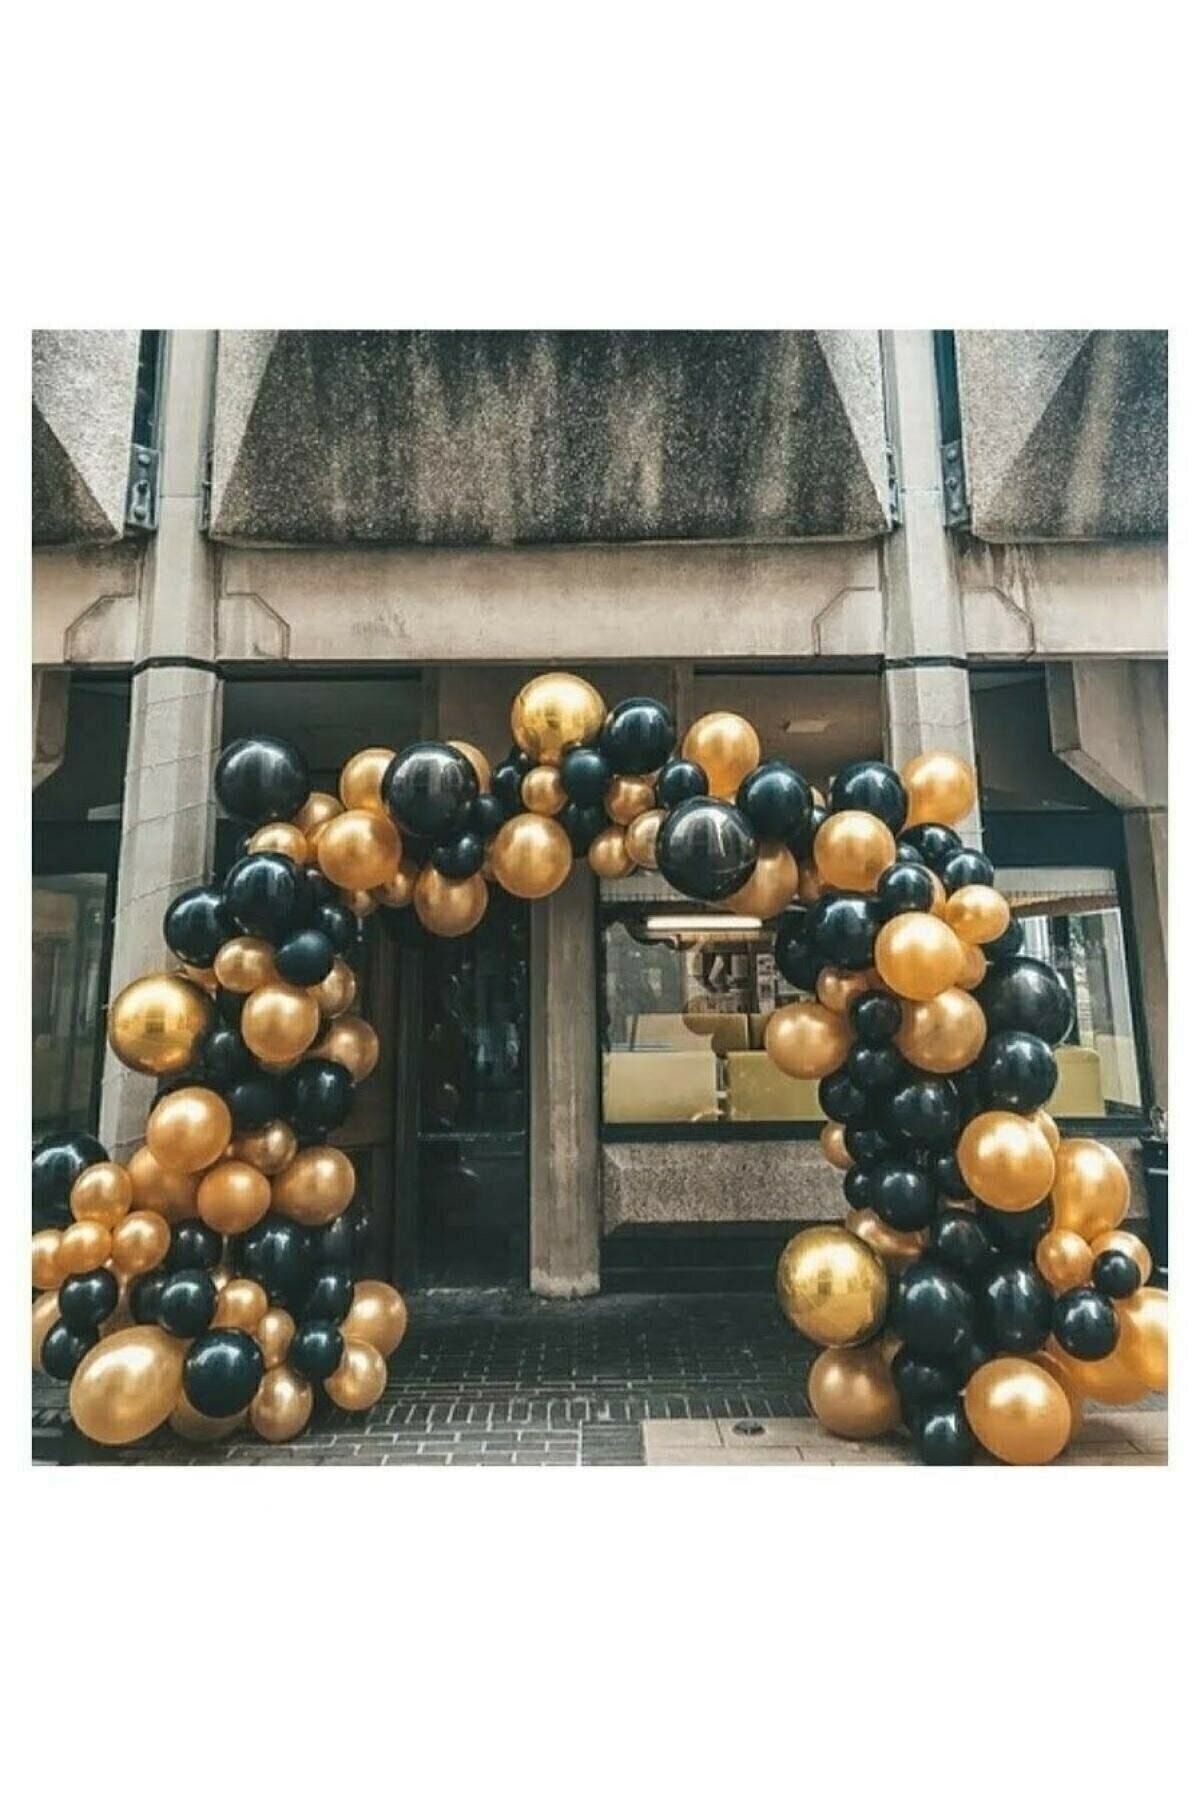 BalonEvi 50 Adet 12 Inç Parti Balonu Metalik Gold - Pastel Siyah + 5 Mt Balon Zinciri